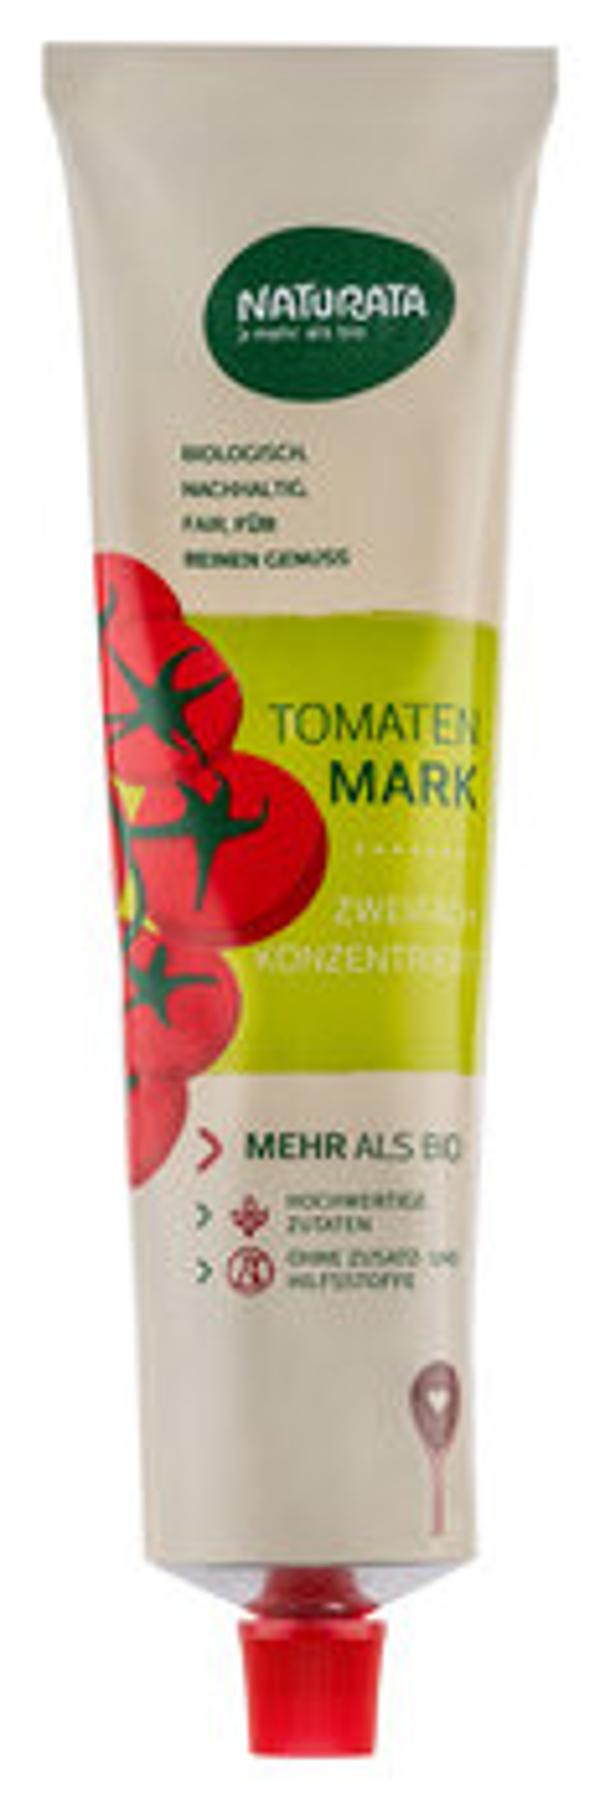 Produktfoto zu Tomatenmark in der Tube 200g